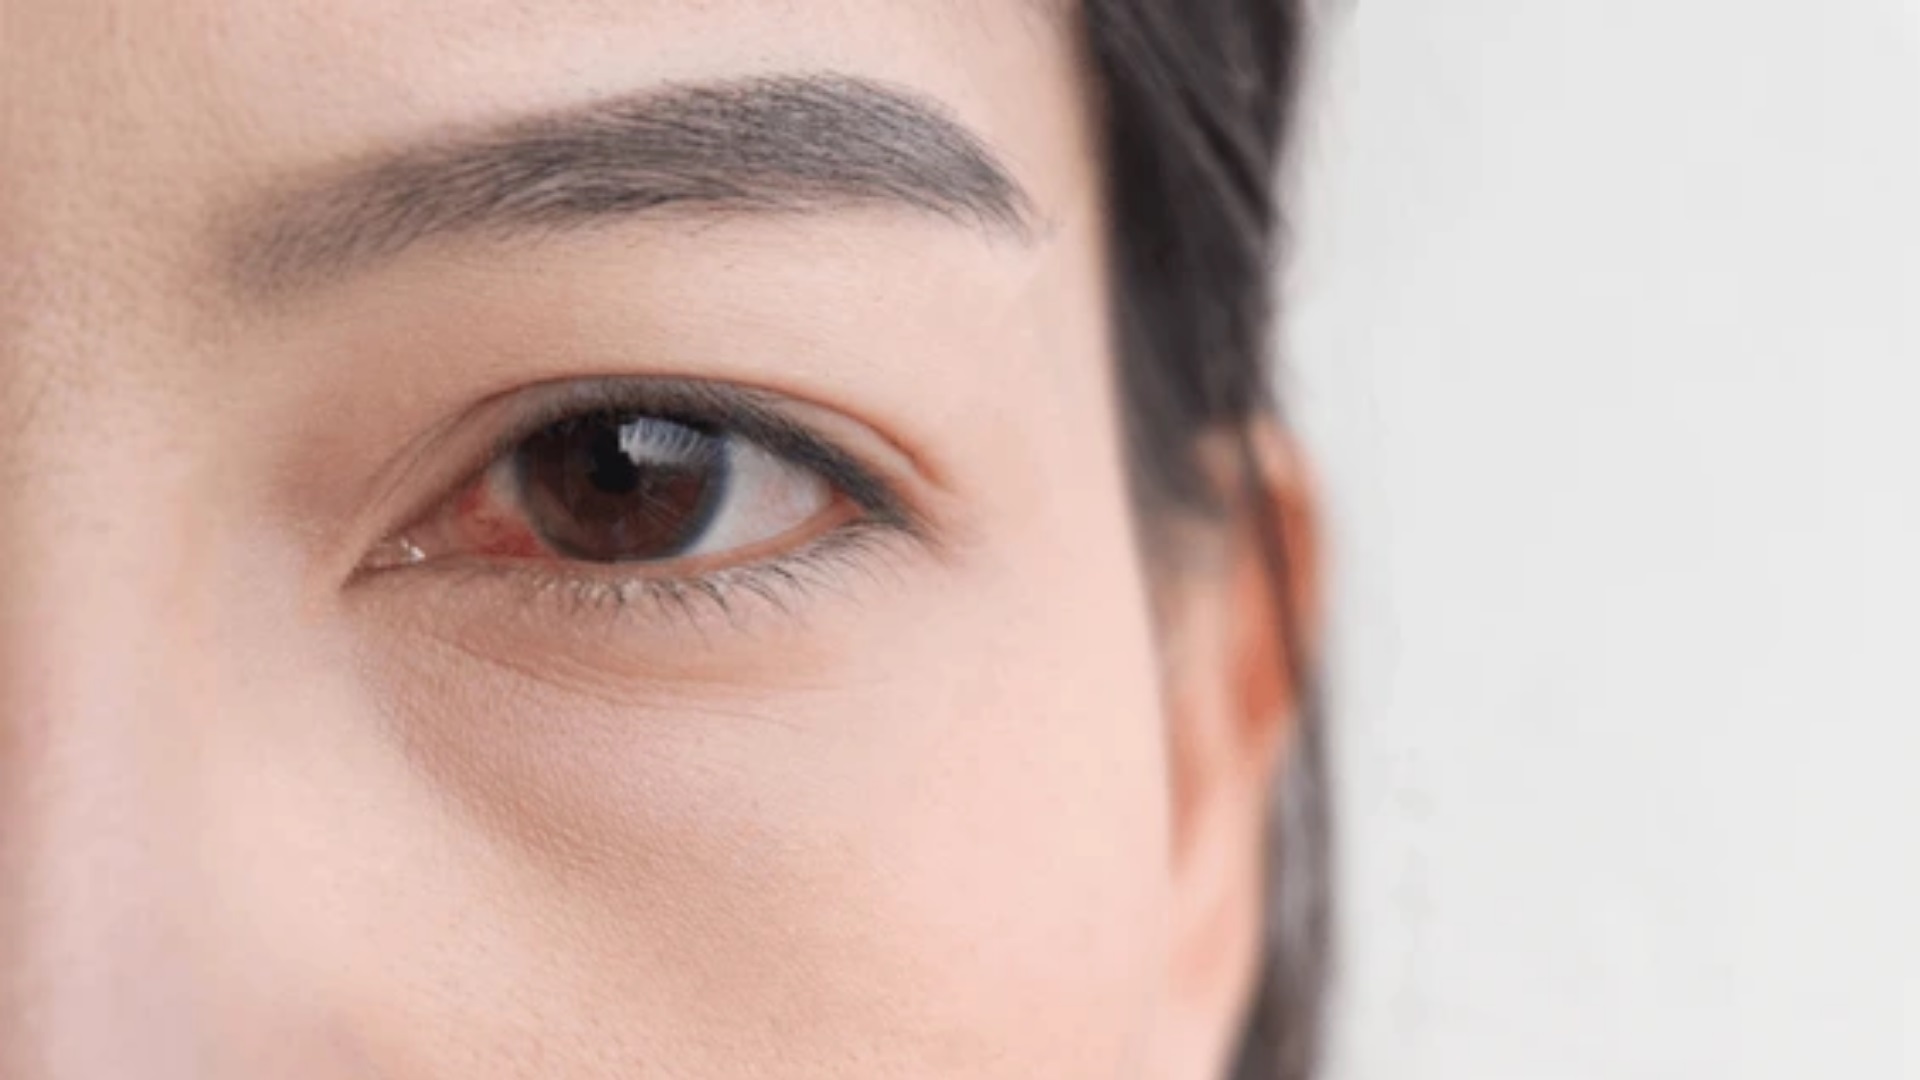 Vùng da mắt mỏng, cần có sản phẩm chăm sóc riêng như tinh chất mắt Lorsia.